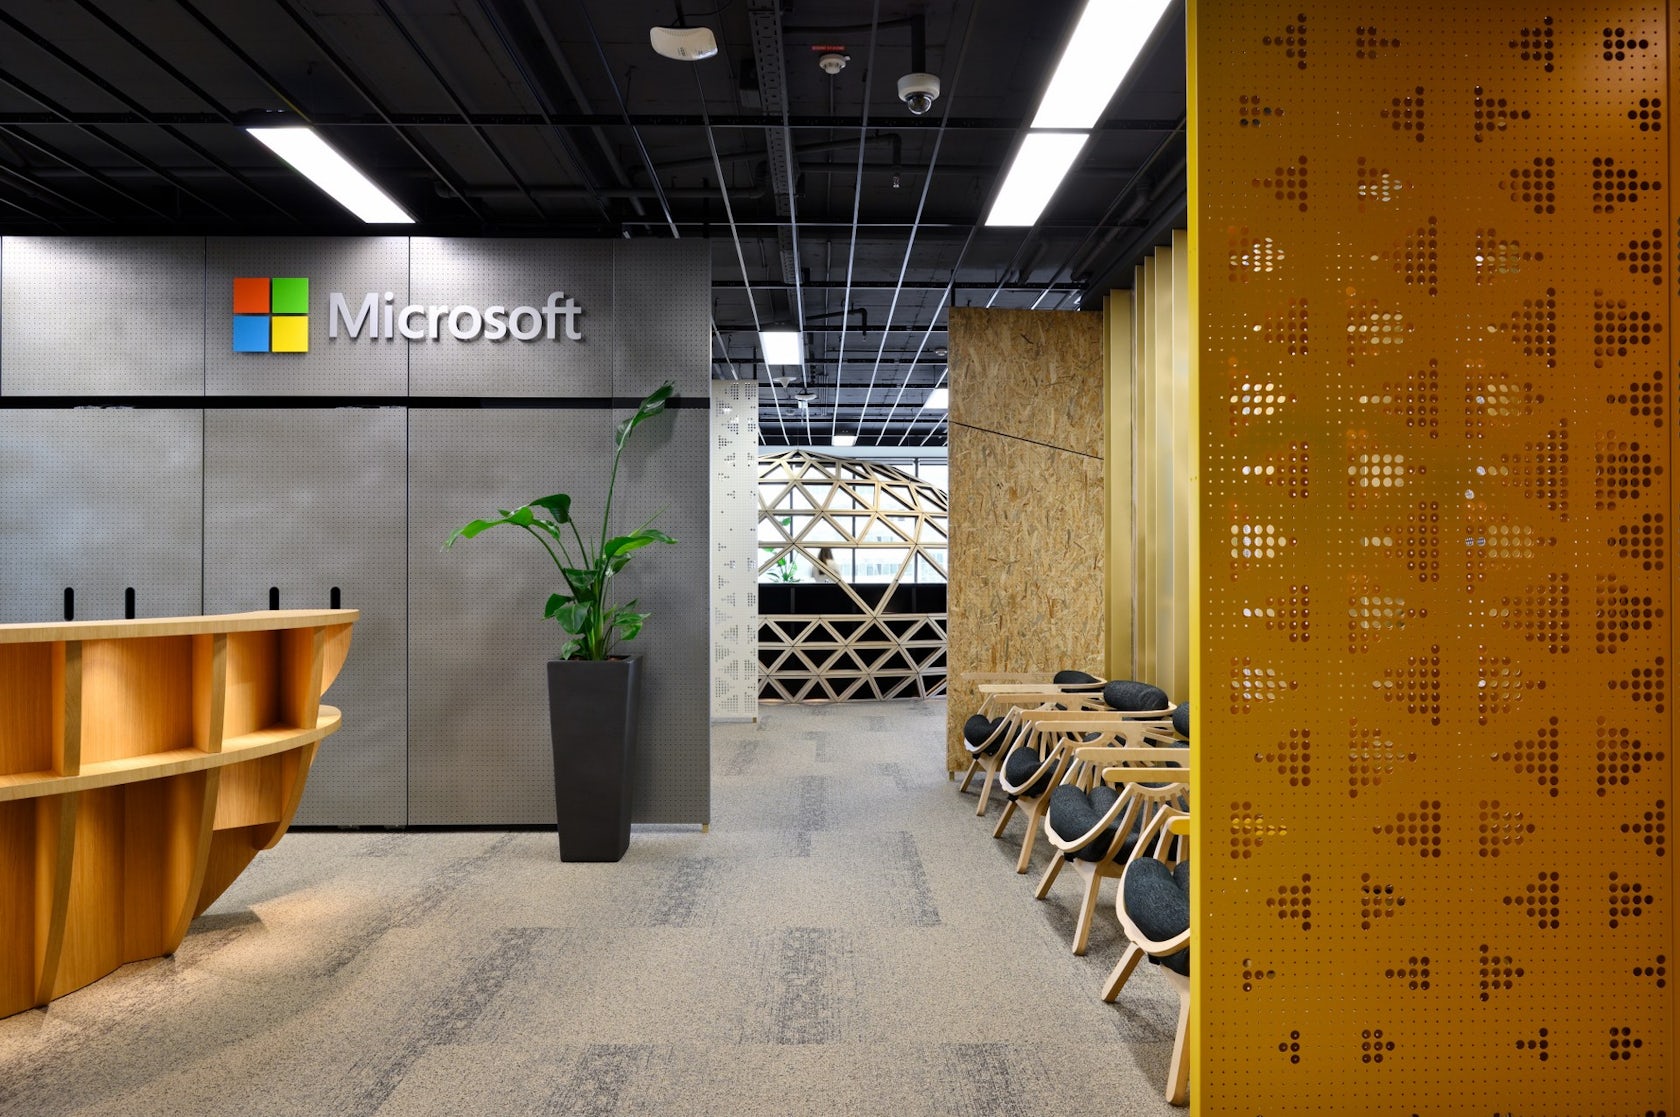 Microsoft Interior office design - Fluent design by Superform - Architizer